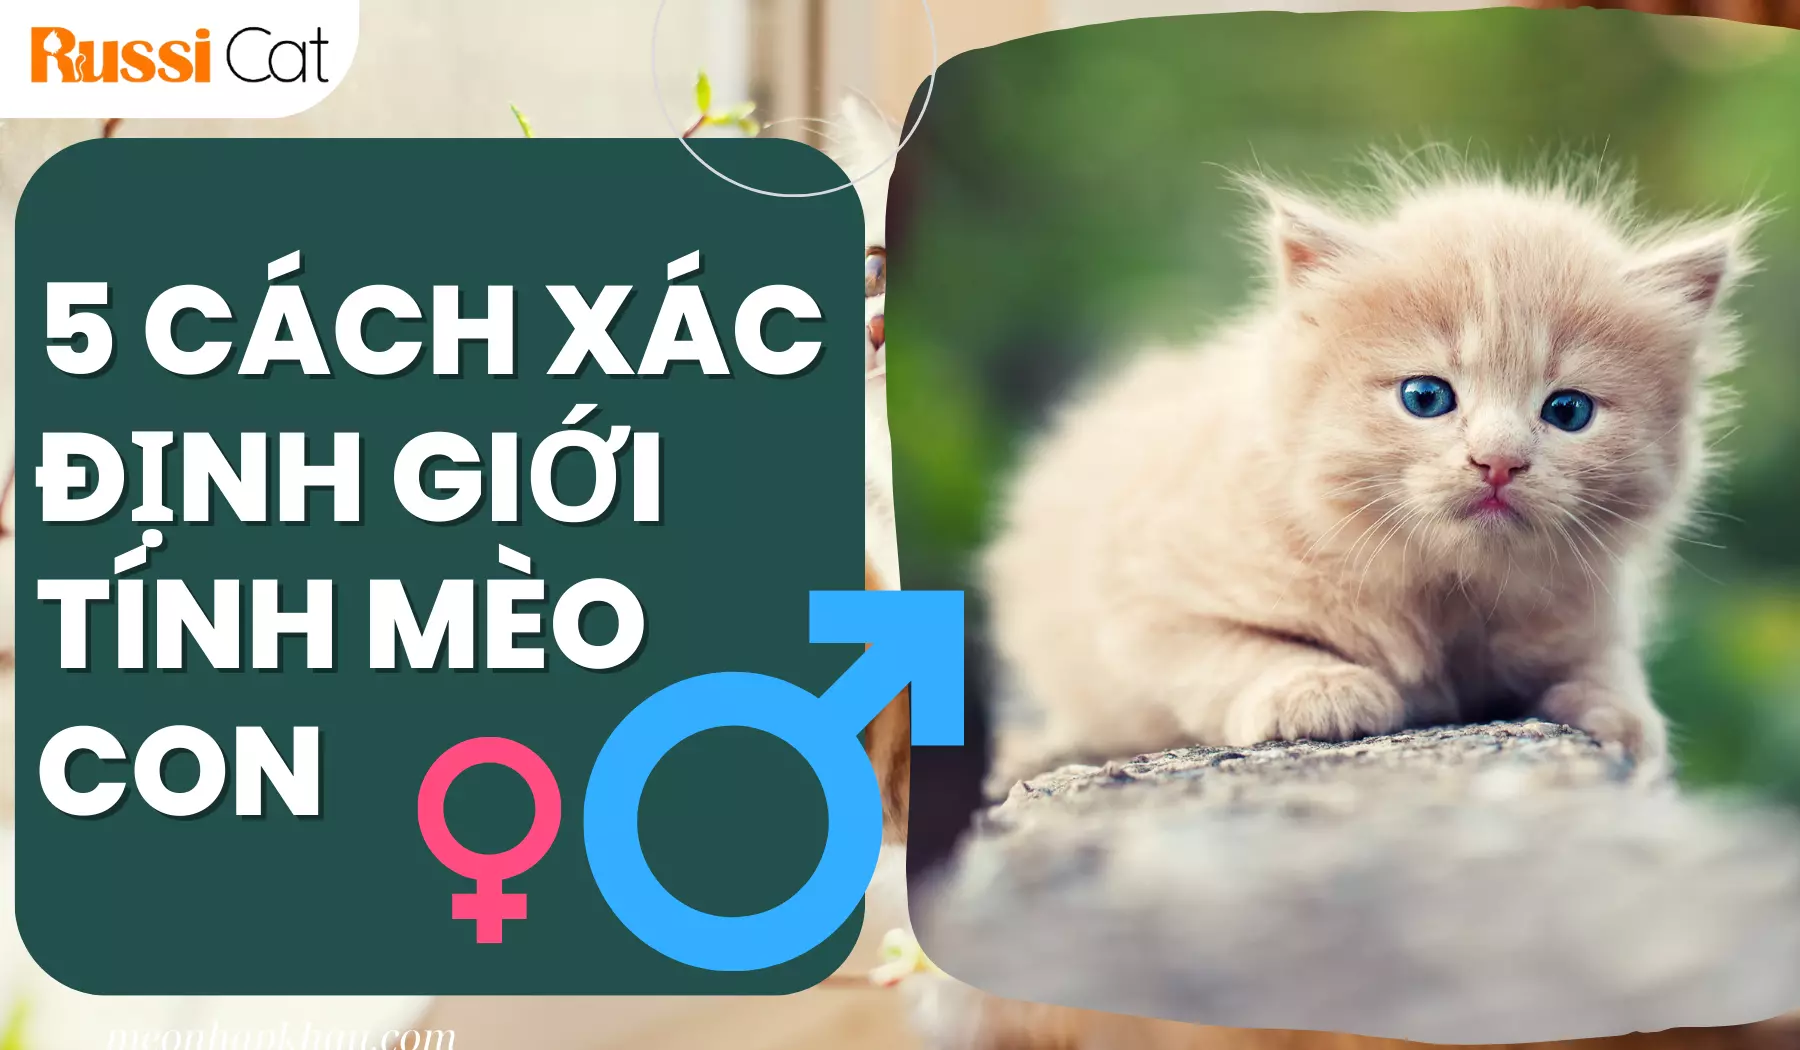 5 Cách xác định giới tính mèo con - Mèo nhập khẩu